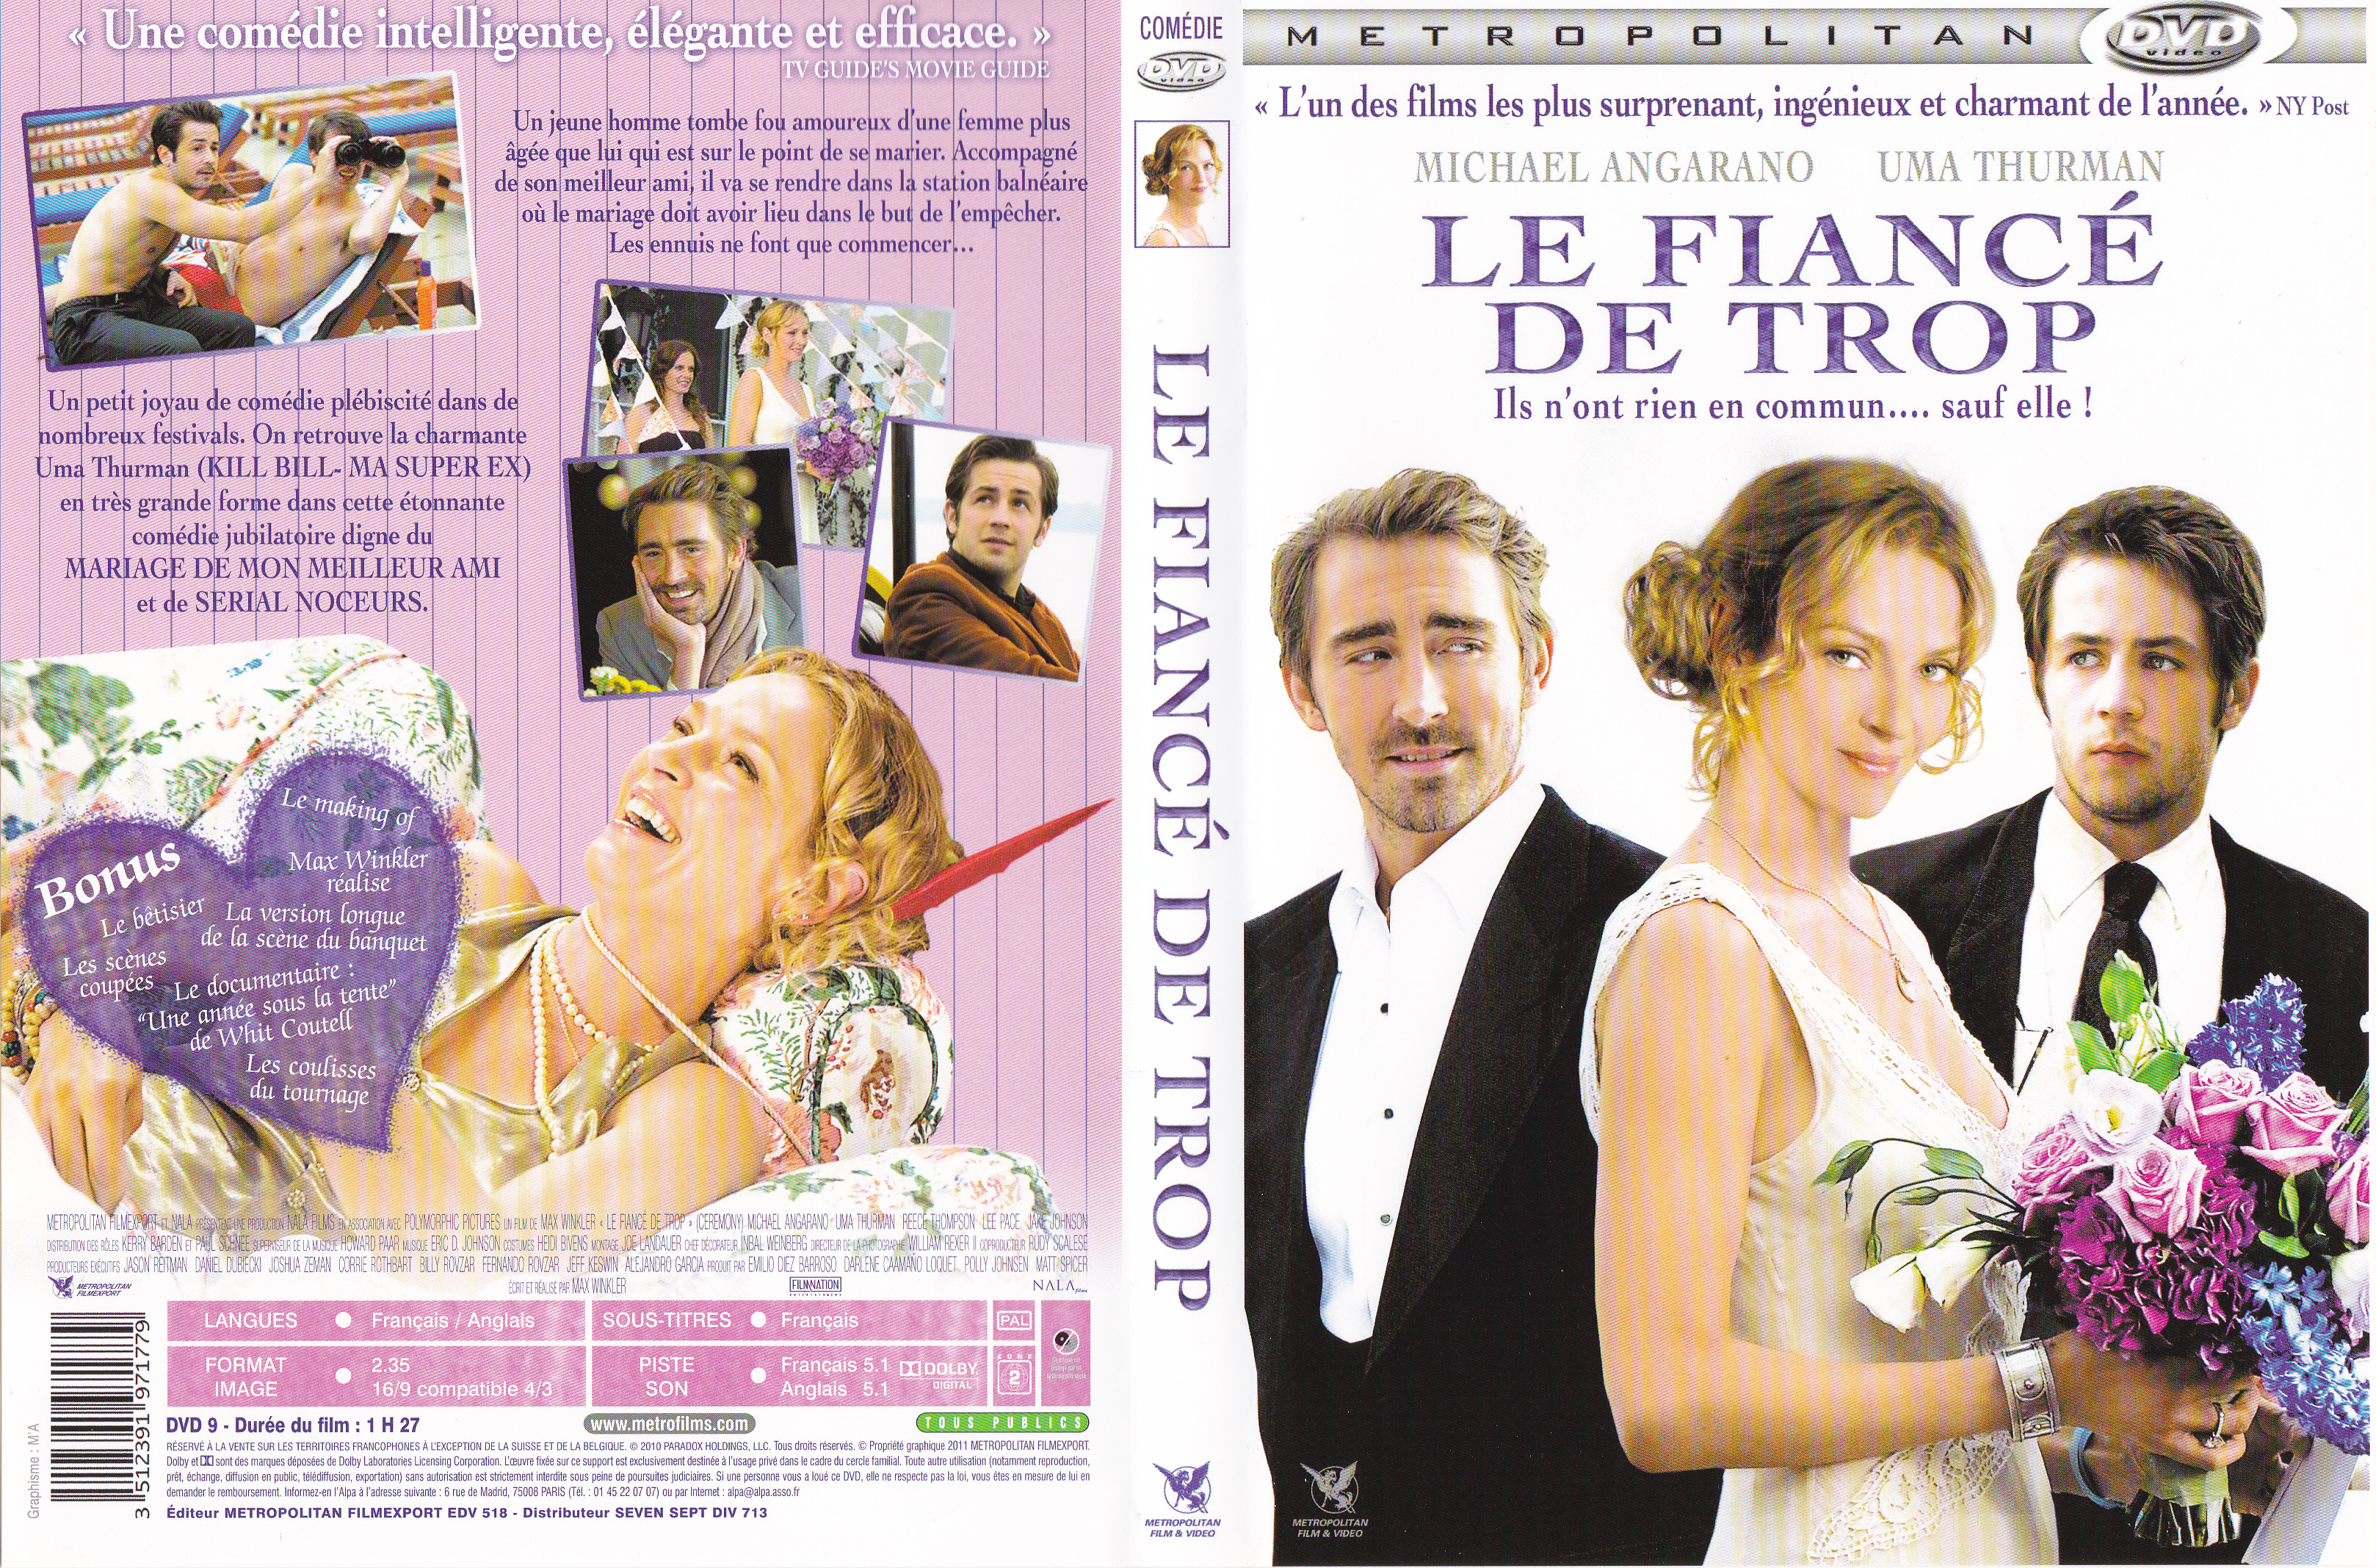 Jaquette DVD Le fiance de trop (BLU-RAY)